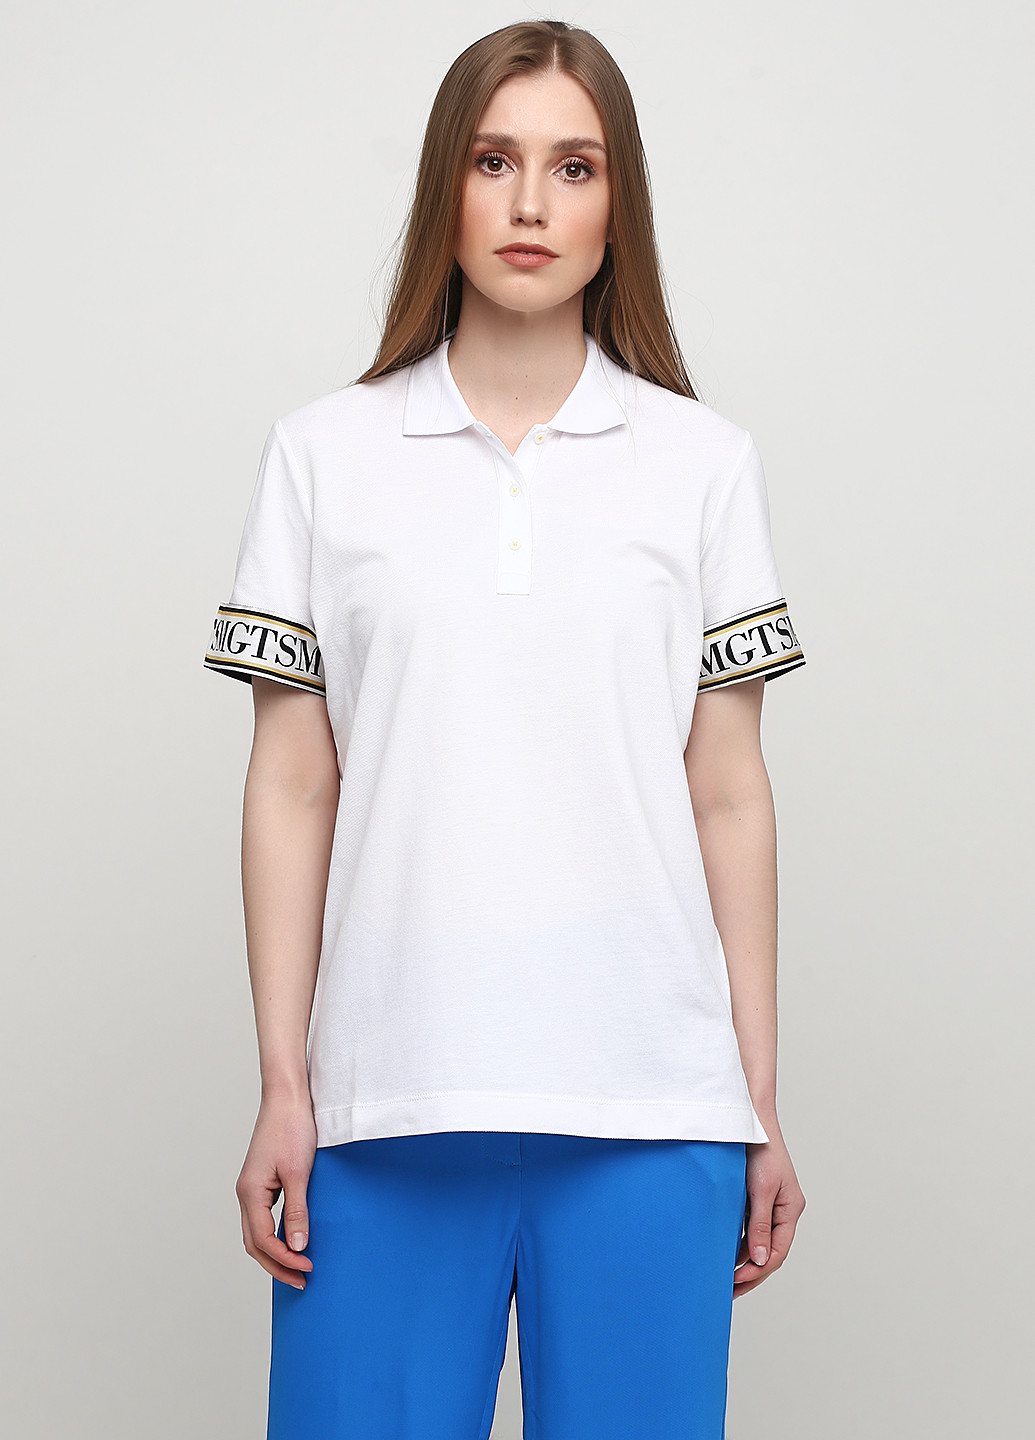 Белая женская футболка-поло Margittes с надписью